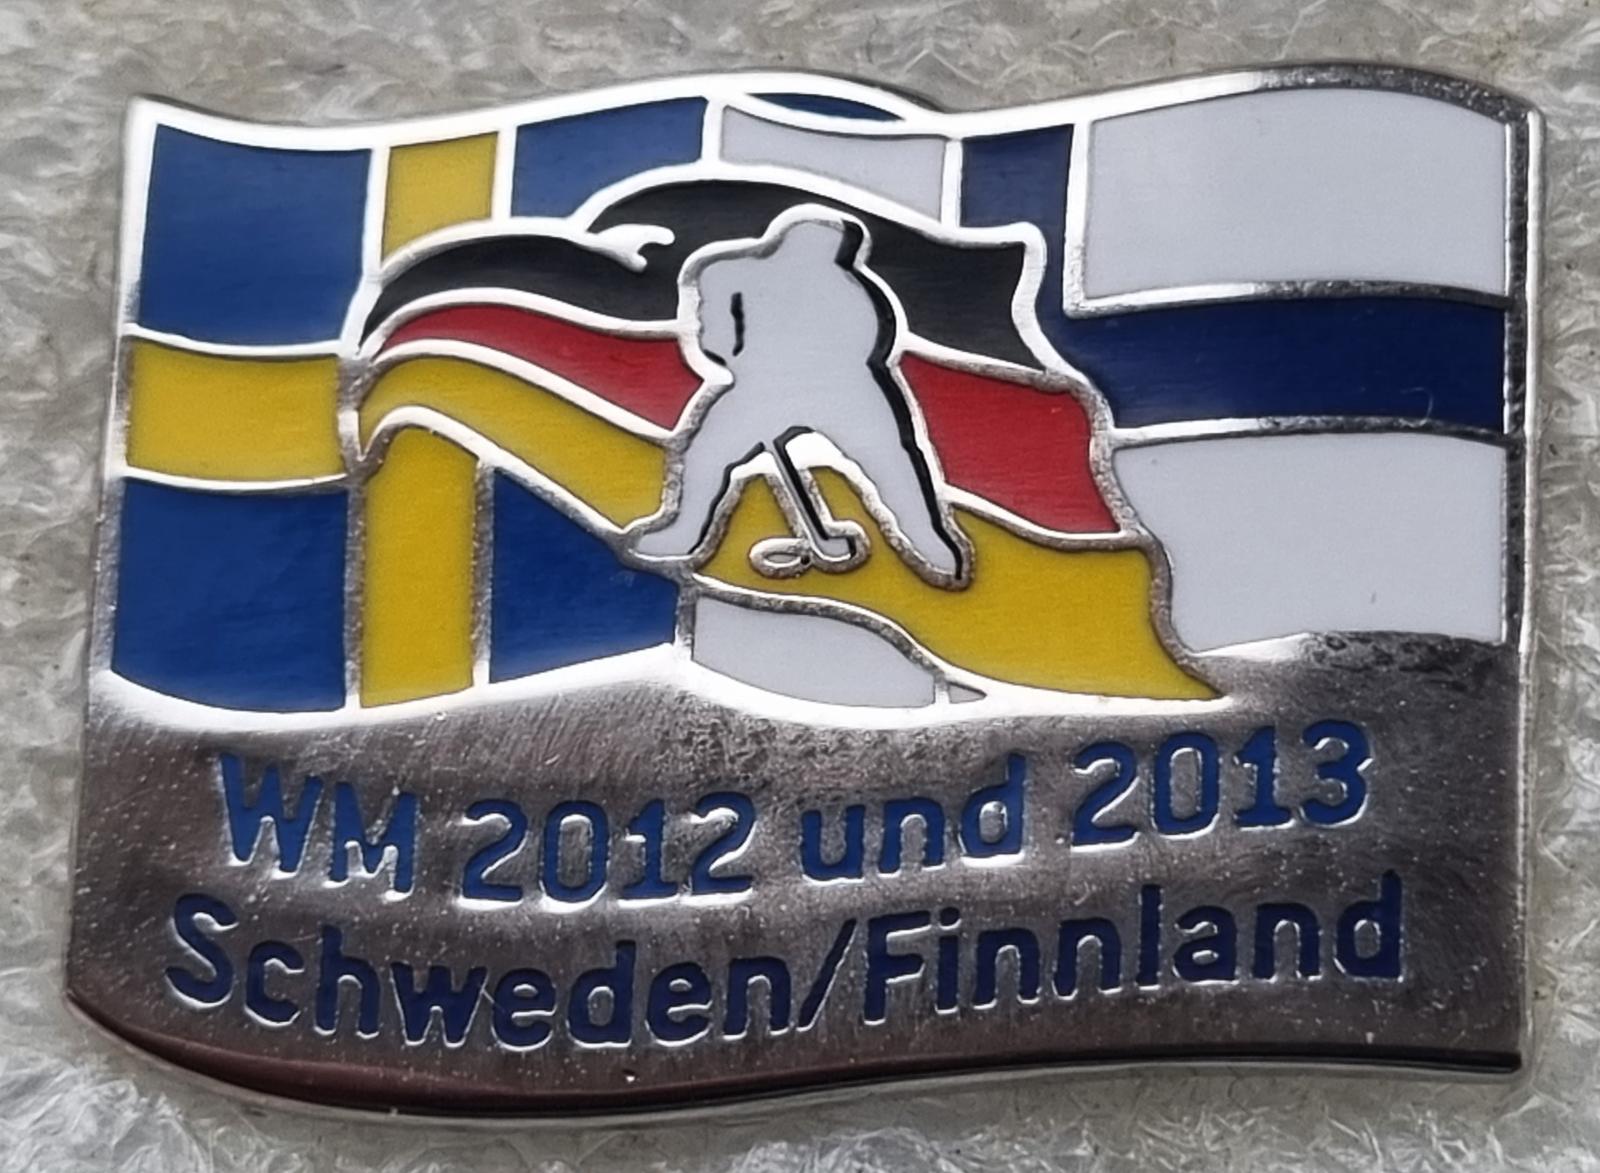 WM 2012 a 2013 SWEDEN A FINNLAND - účastník NEMECKO, HOKEJ - Odznaky, nášivky a medaily